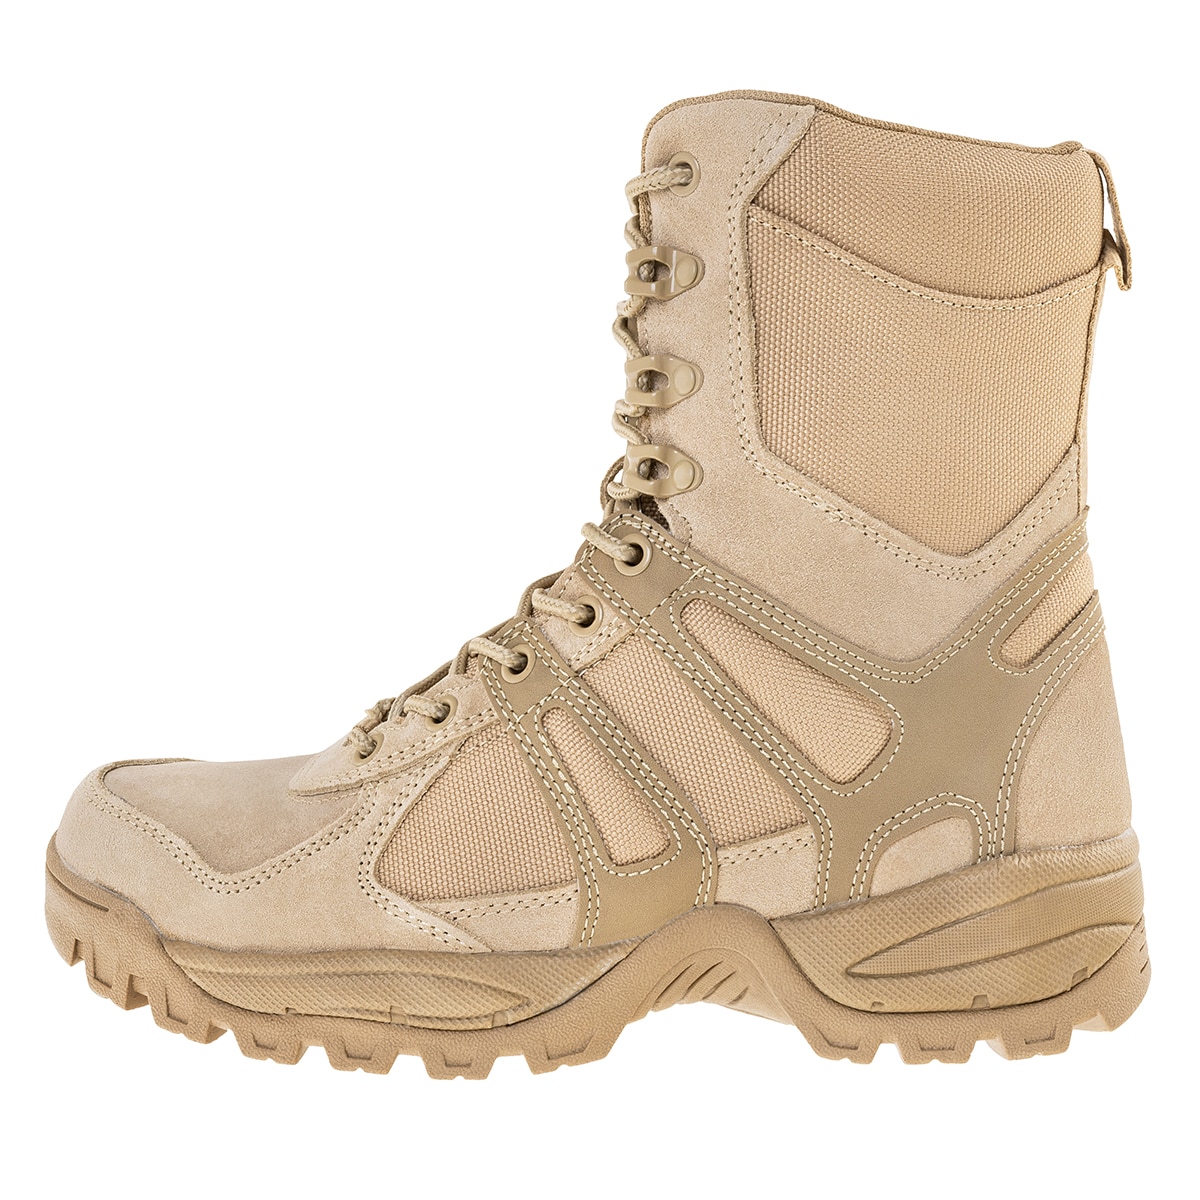 Buty Mil-Tec Combat Boots Gen. II - Khaki